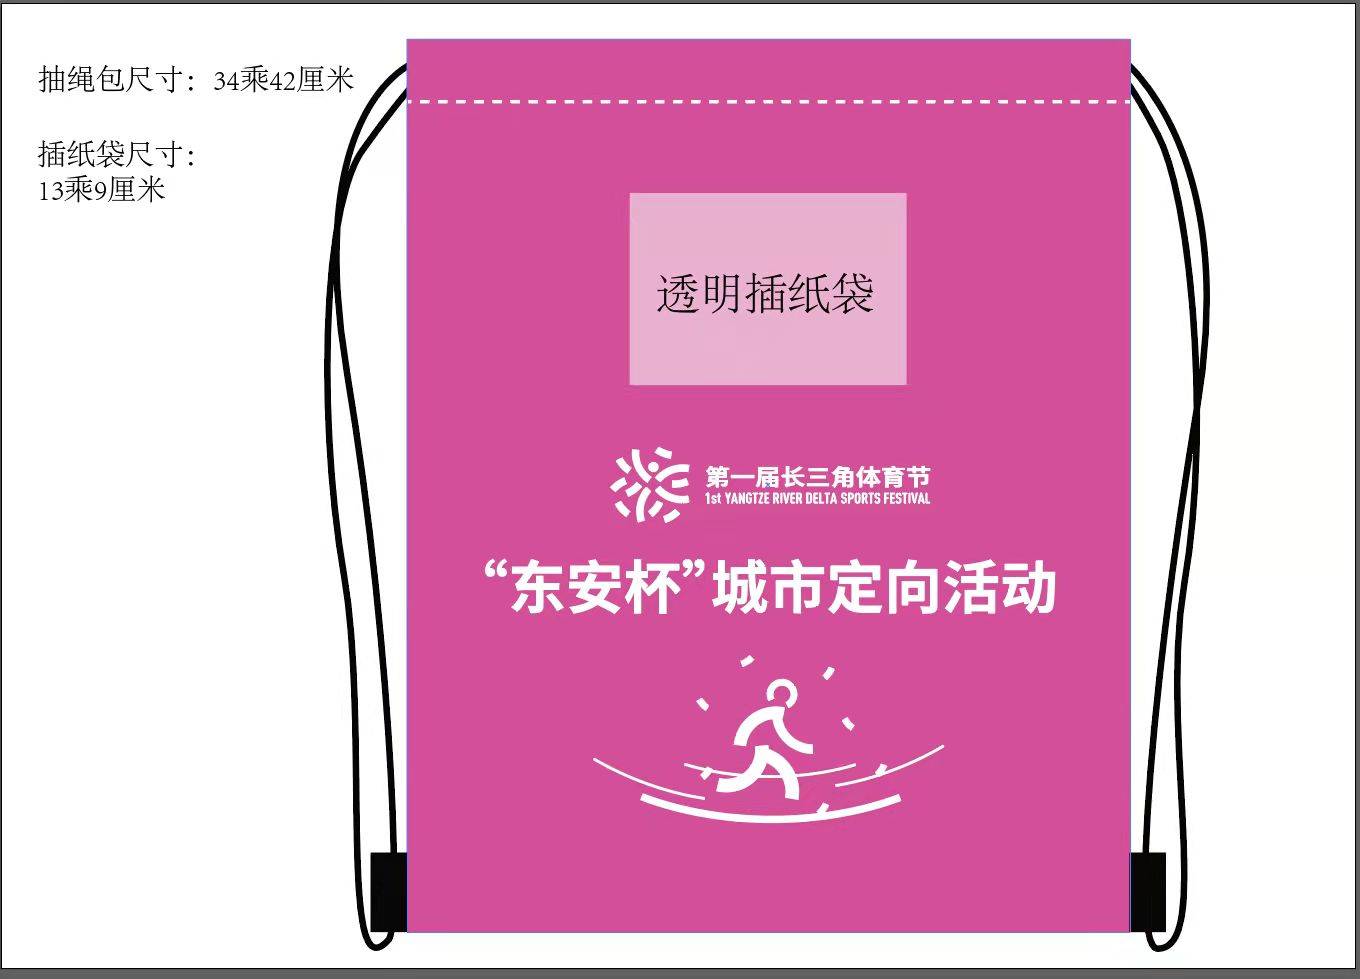 上海海湾森林国家公园 第一届长三角体育节—“东安杯”城市定向活动 稀缺名额 火热报名中！欢乐大众4人套票仅售98元！